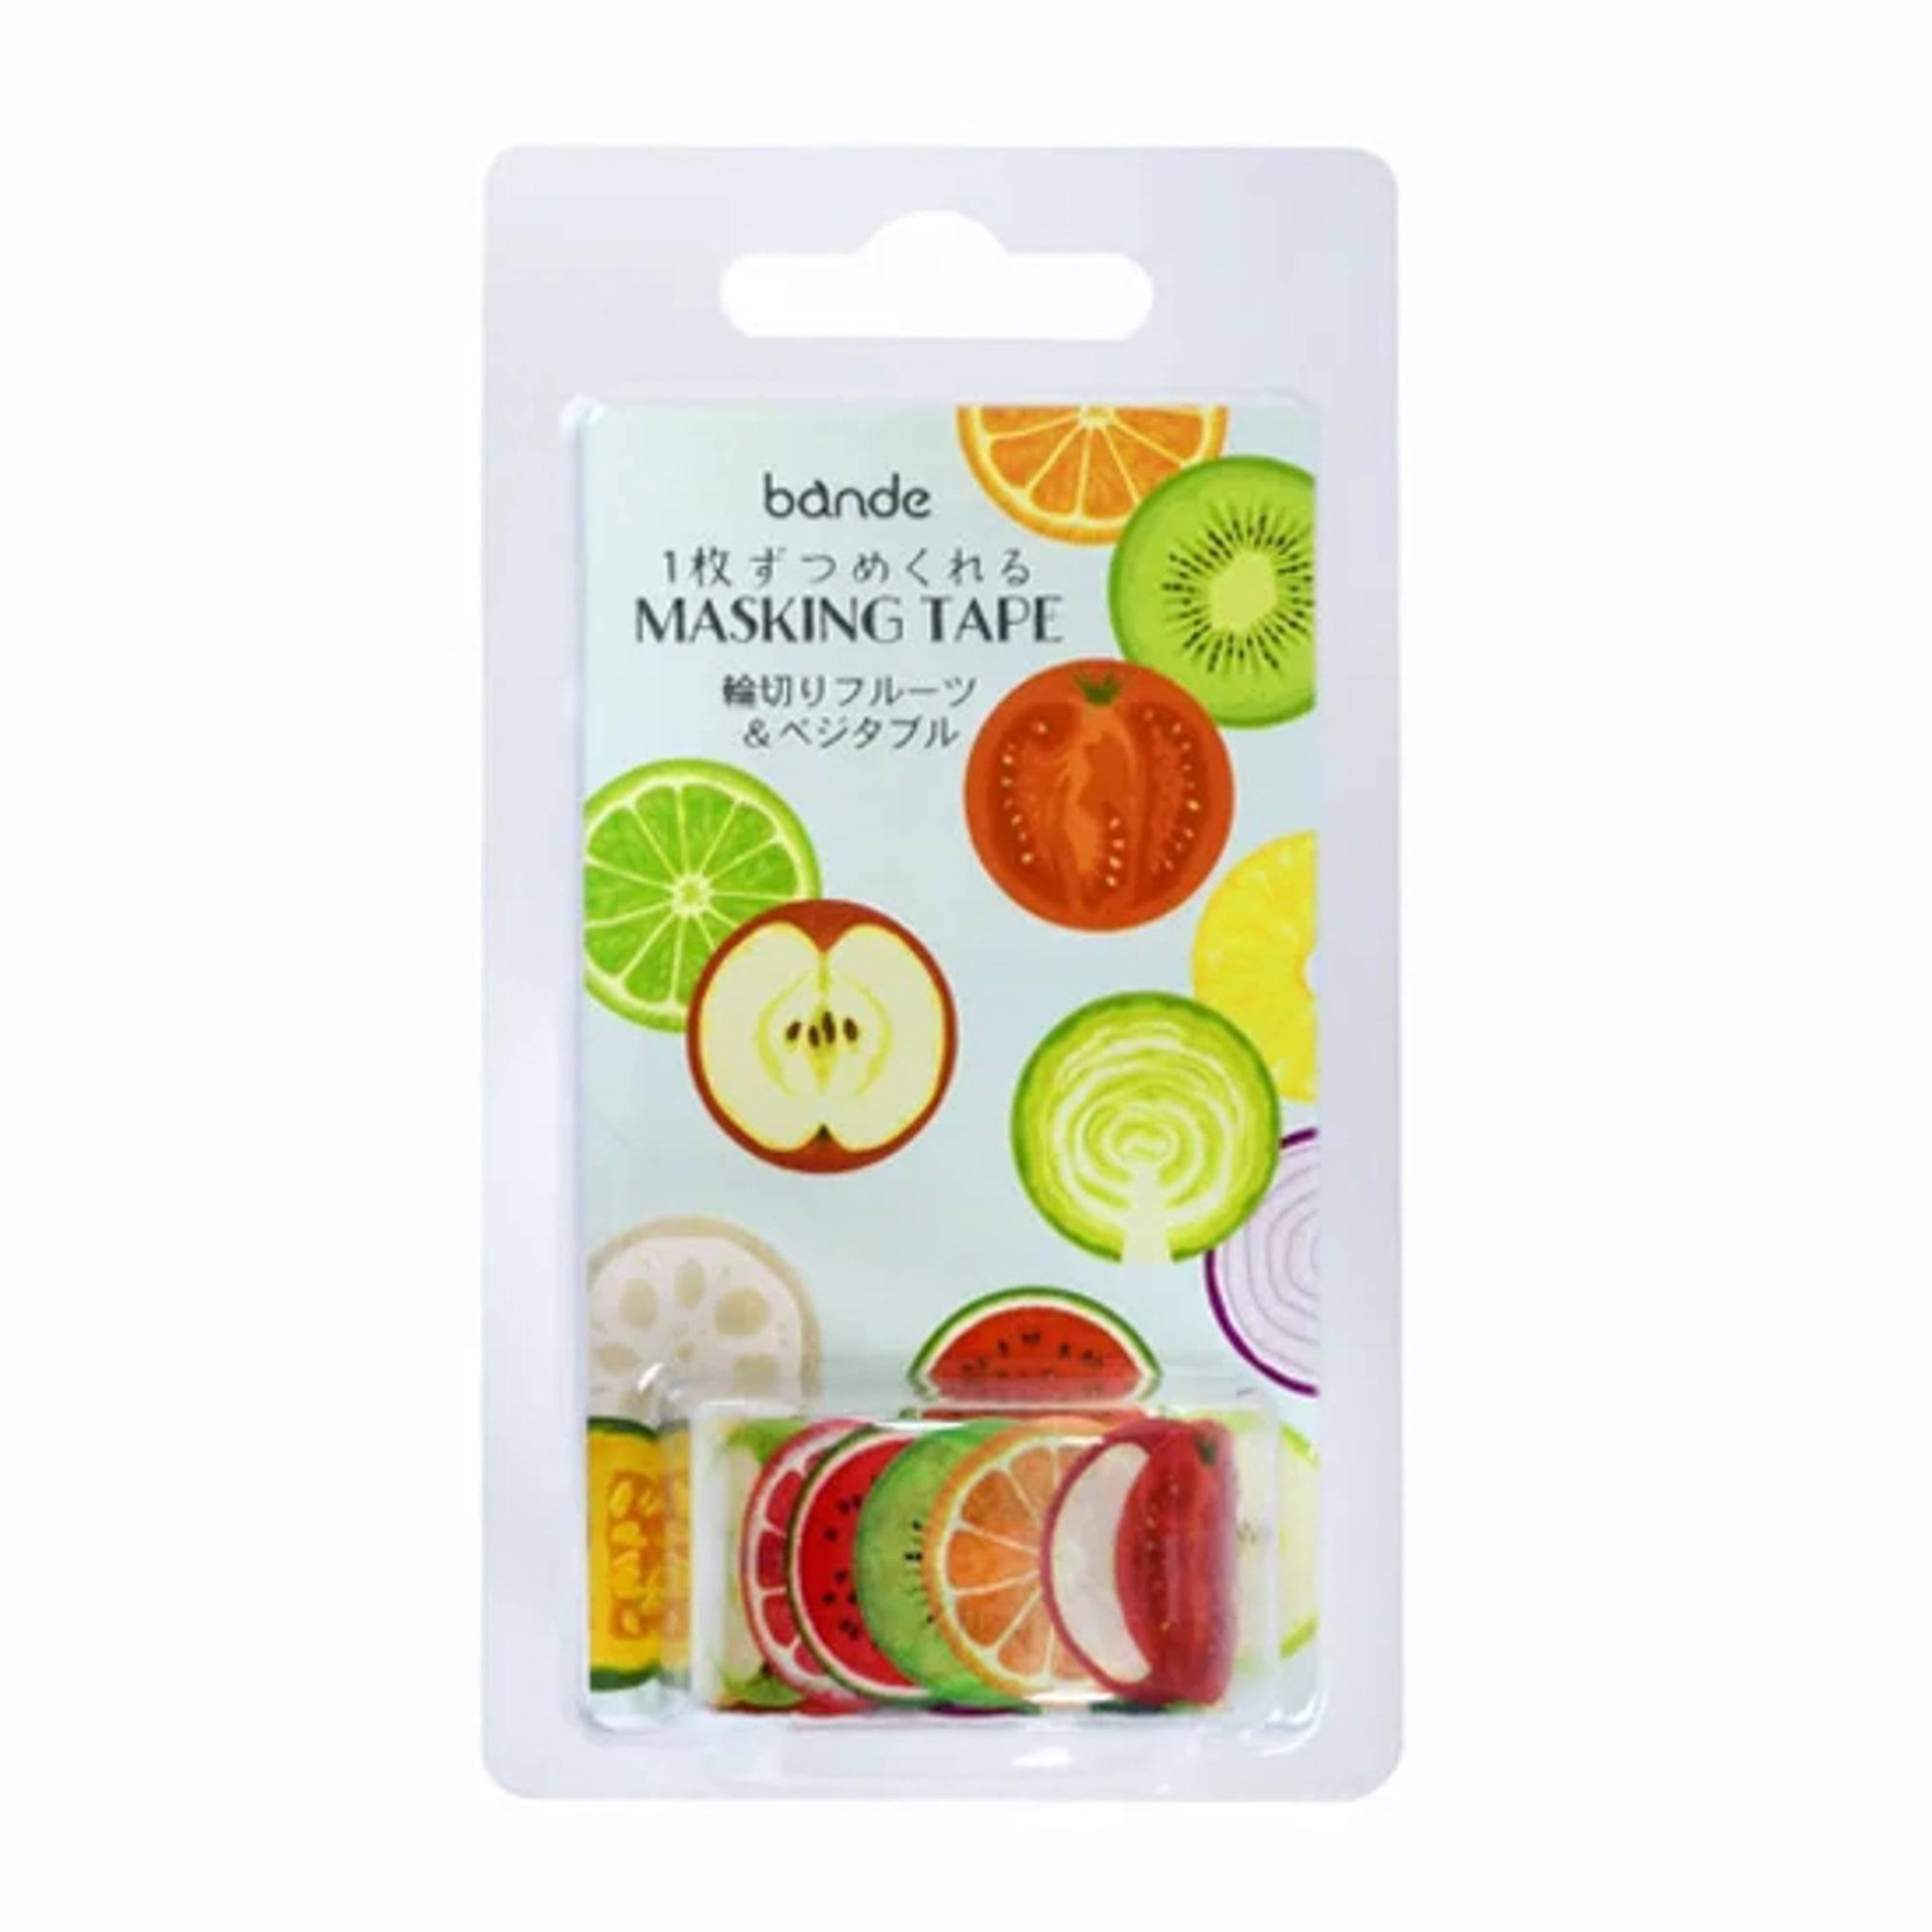 Sliced Fruites & Vegitables Washi Tape Sticker Rolls - Bande - Komorebi Stationery